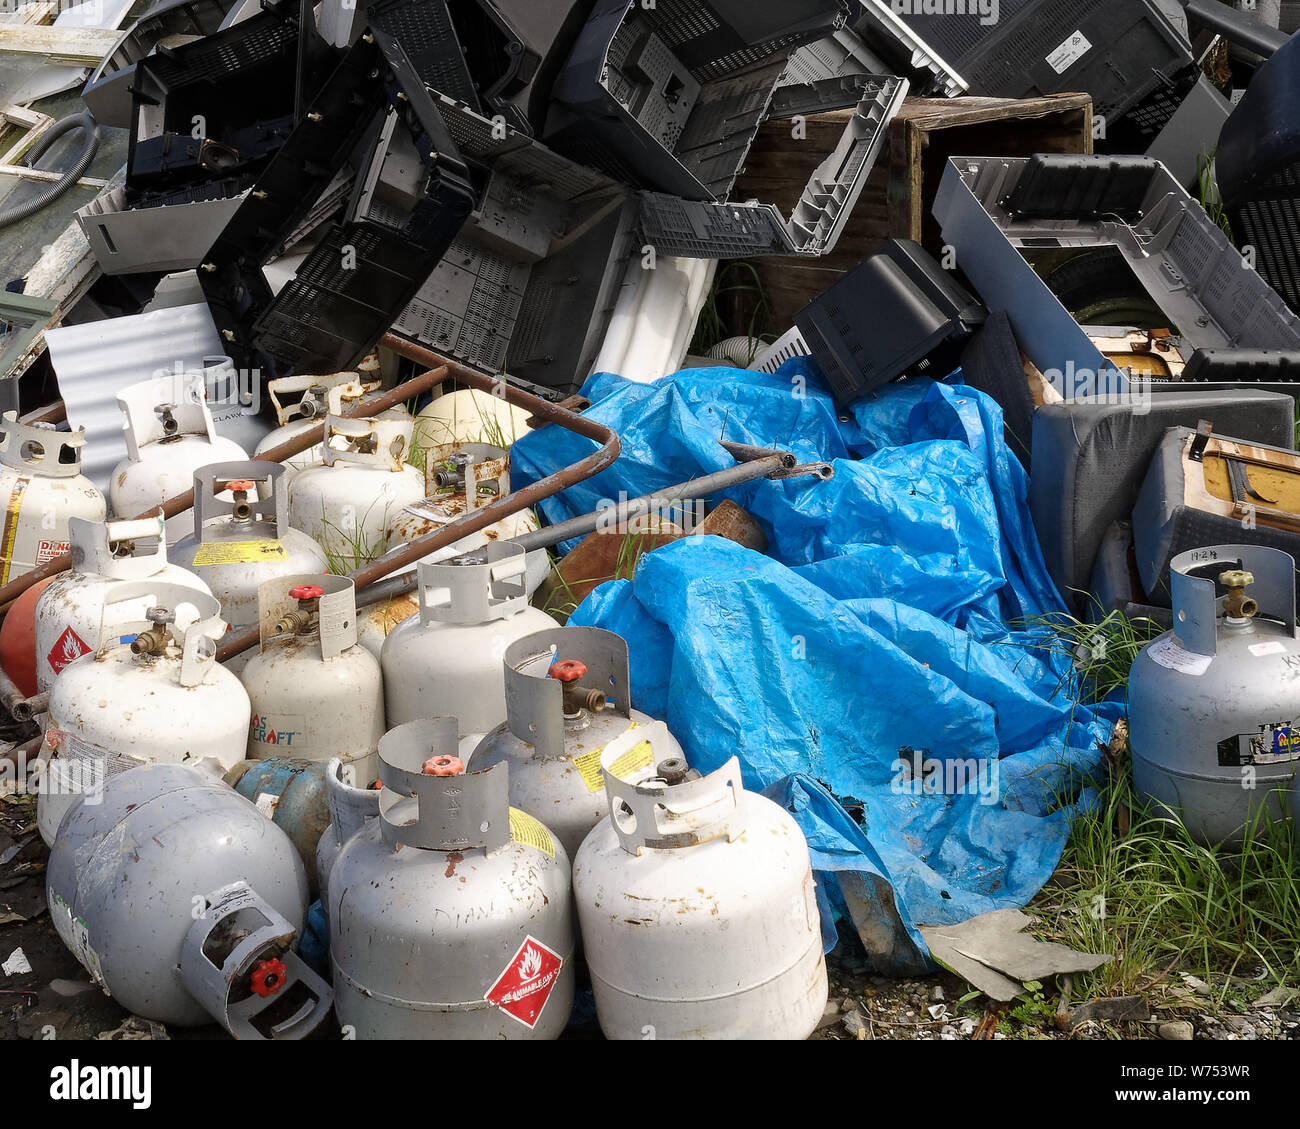 Motueka, Tasman/Neuseeland - August 2, 2019: Gasflaschen oder Flaschen entsorgt ein Recycle Center - ein Unfall, der wartet, um zu geschehen. Stockfoto